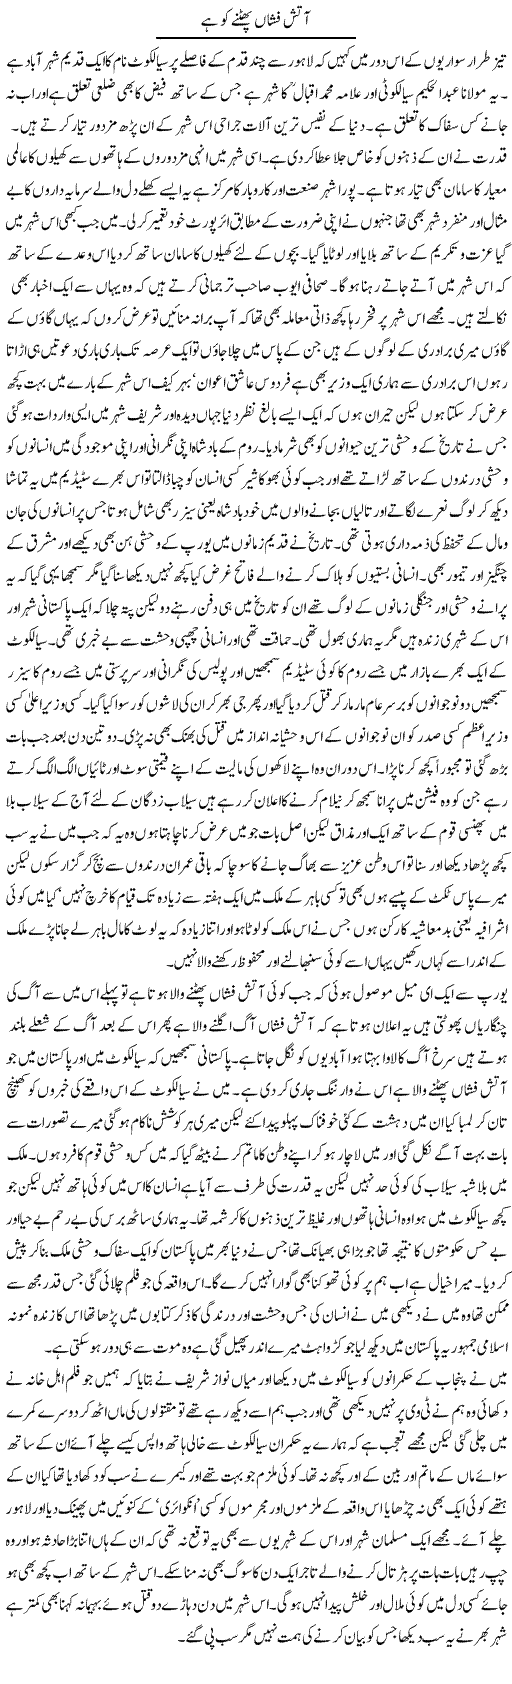 Aatish Fishaan Express Column Abdul Qadir 24 August 2010